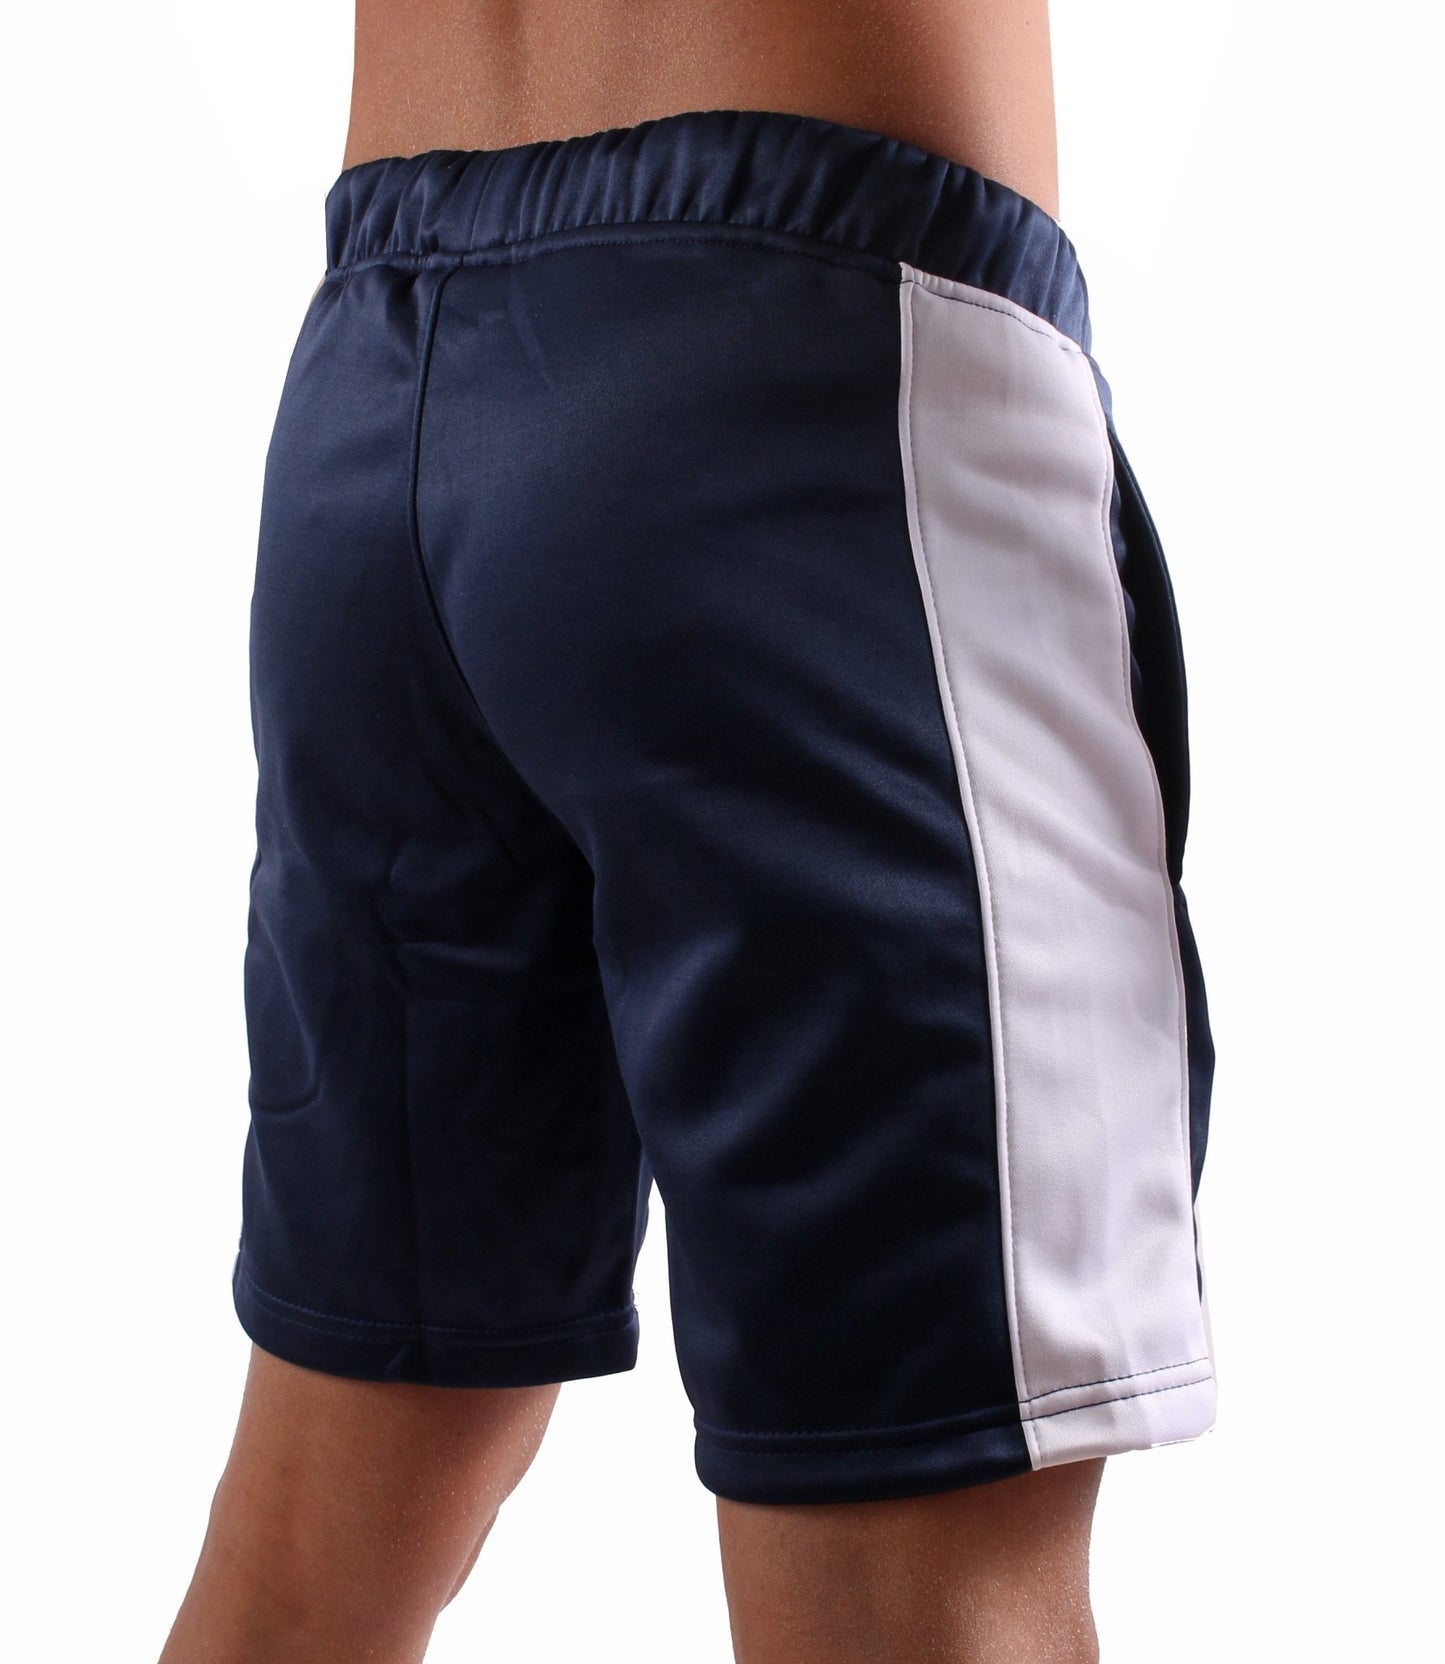 Stylische Gym Generation Fitness Shorts, ideal für Laufen, Springen und Krafttraining, mit Seitentaschen für kleine Utensilien.